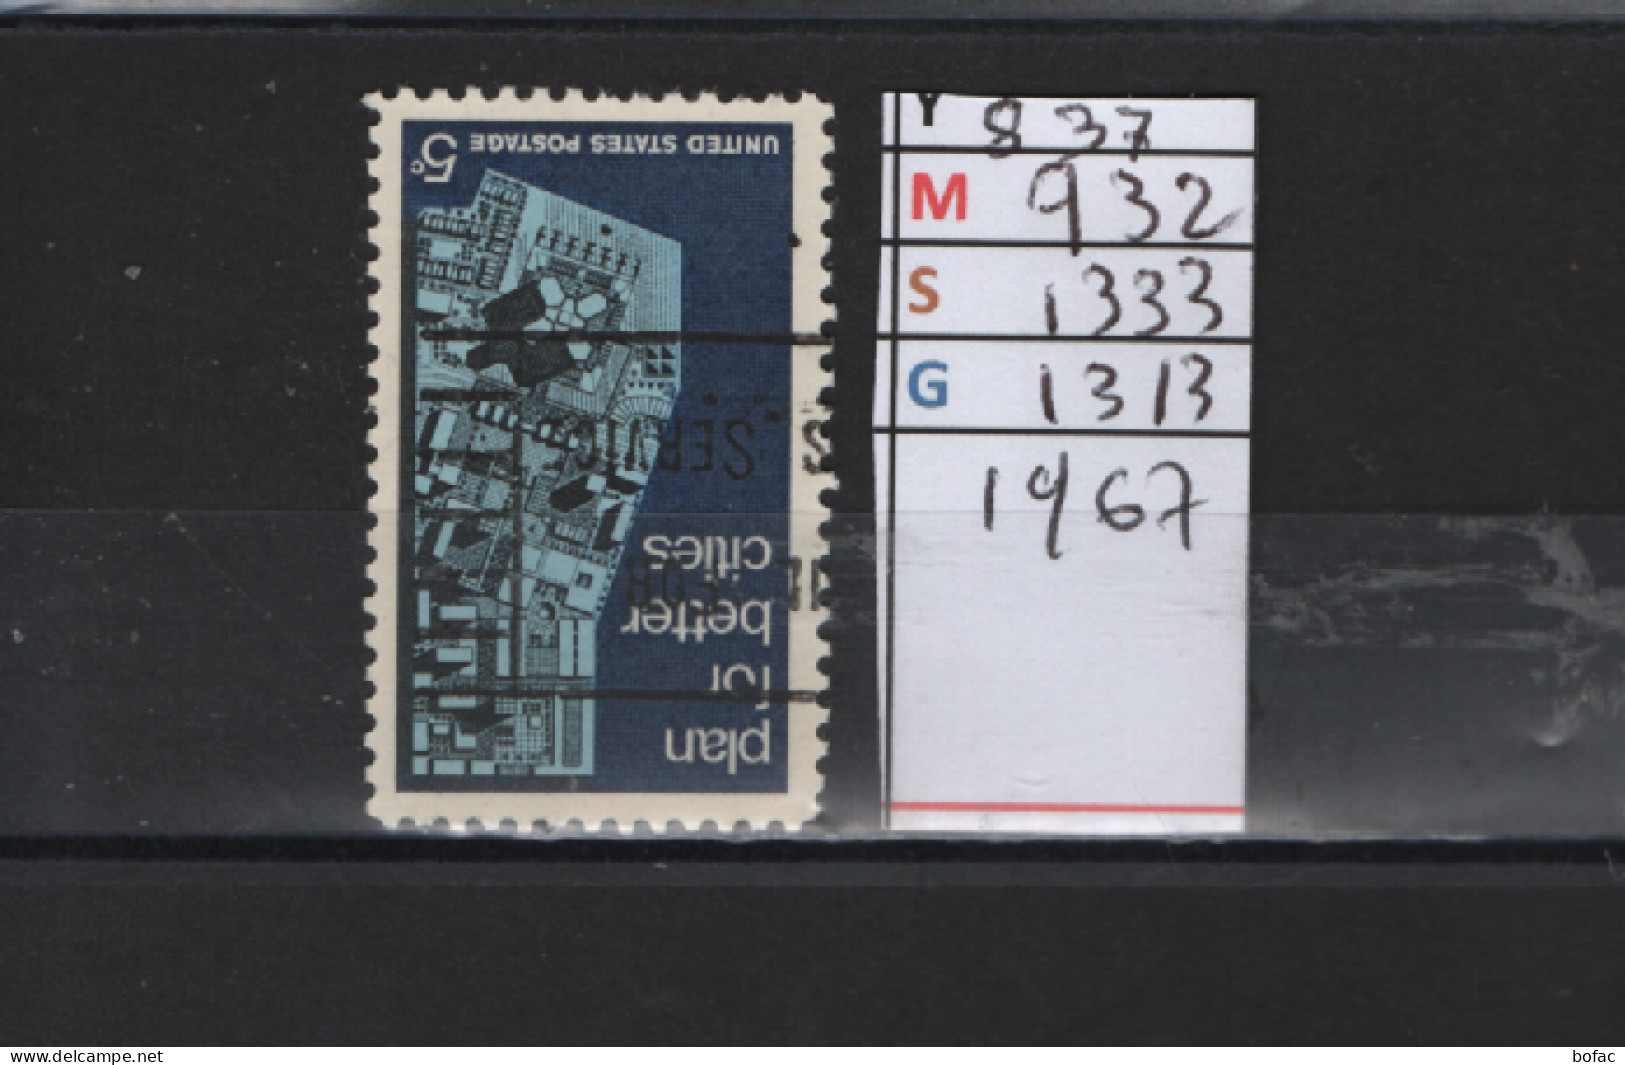 PRIX FIXE Obl  837 YT 932 MIC 1333 SCO 1313 GIB  Conférence Sur Le Plan D'urbanisme à Washington 1967 Etats Unis  58A/12 - Used Stamps